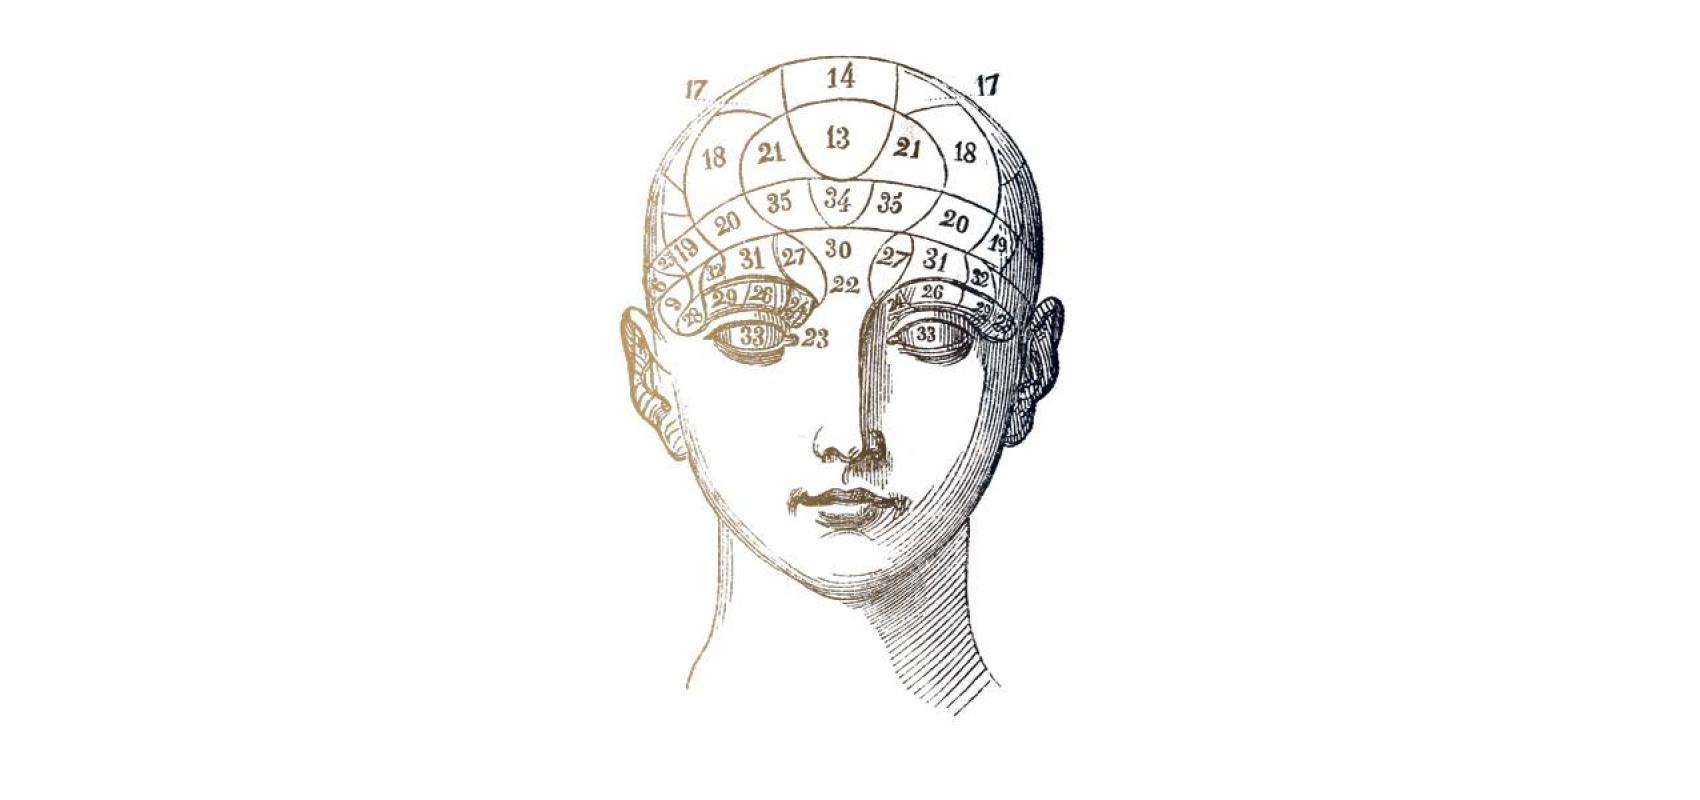 D'après une planche d’organographie, tirée du Manuel pratique de phrénologie ou Physiologie du cerveau, par le Dr Giovanni Fossati, 1845 -  - BnF, département des Sciences et techniques